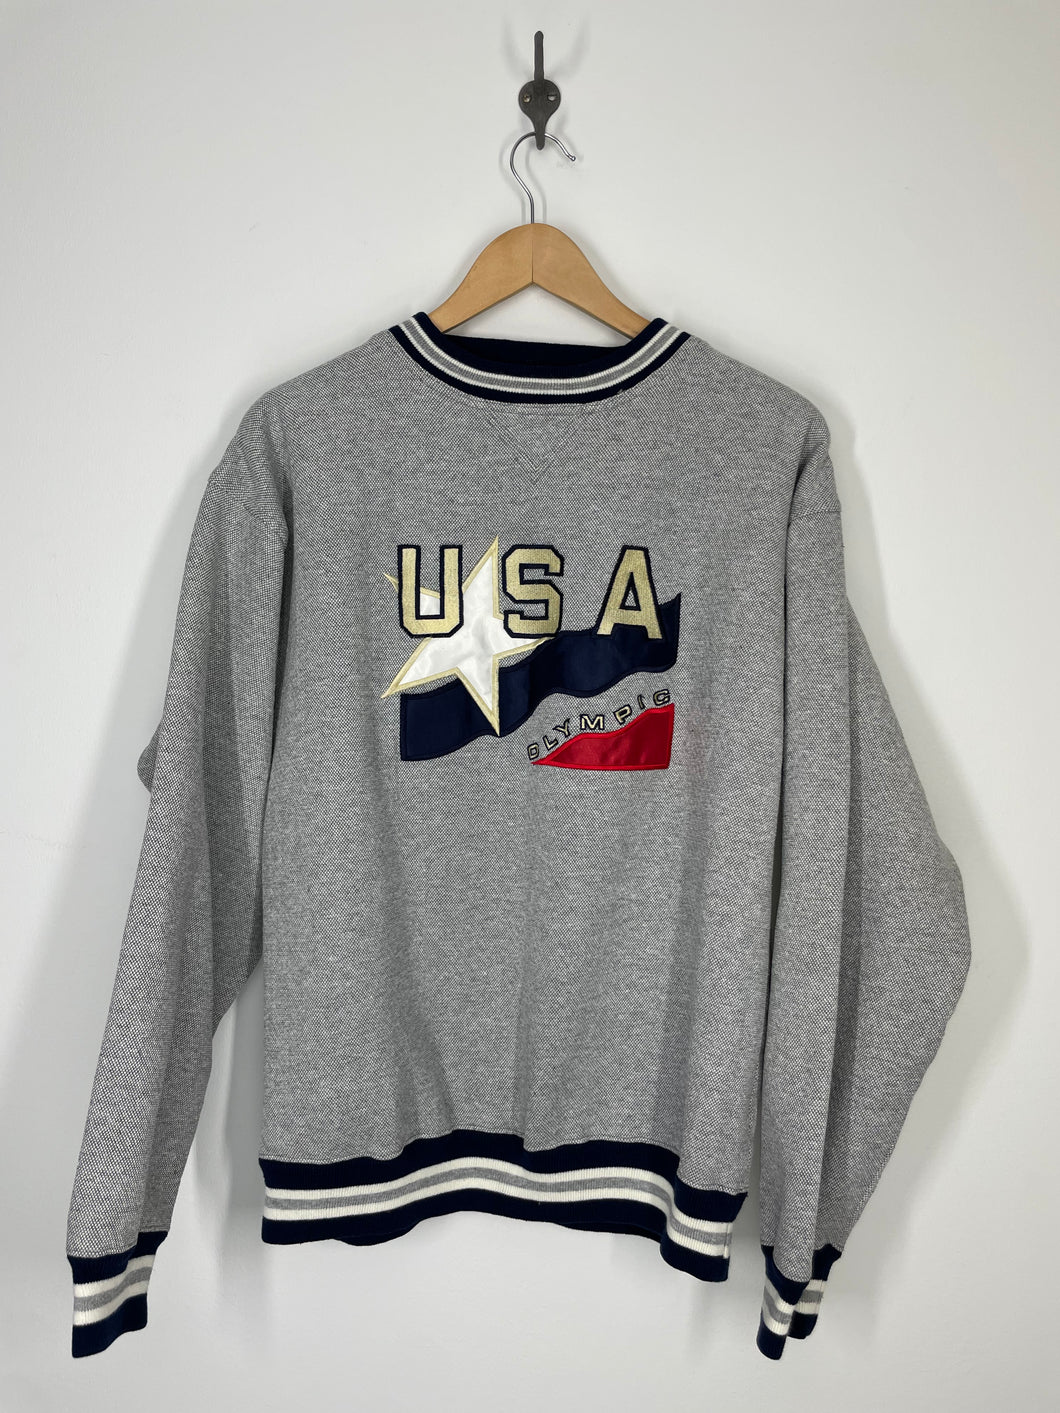 USA Olympic Embroidered Crewneck Sweatshirt - USA - M